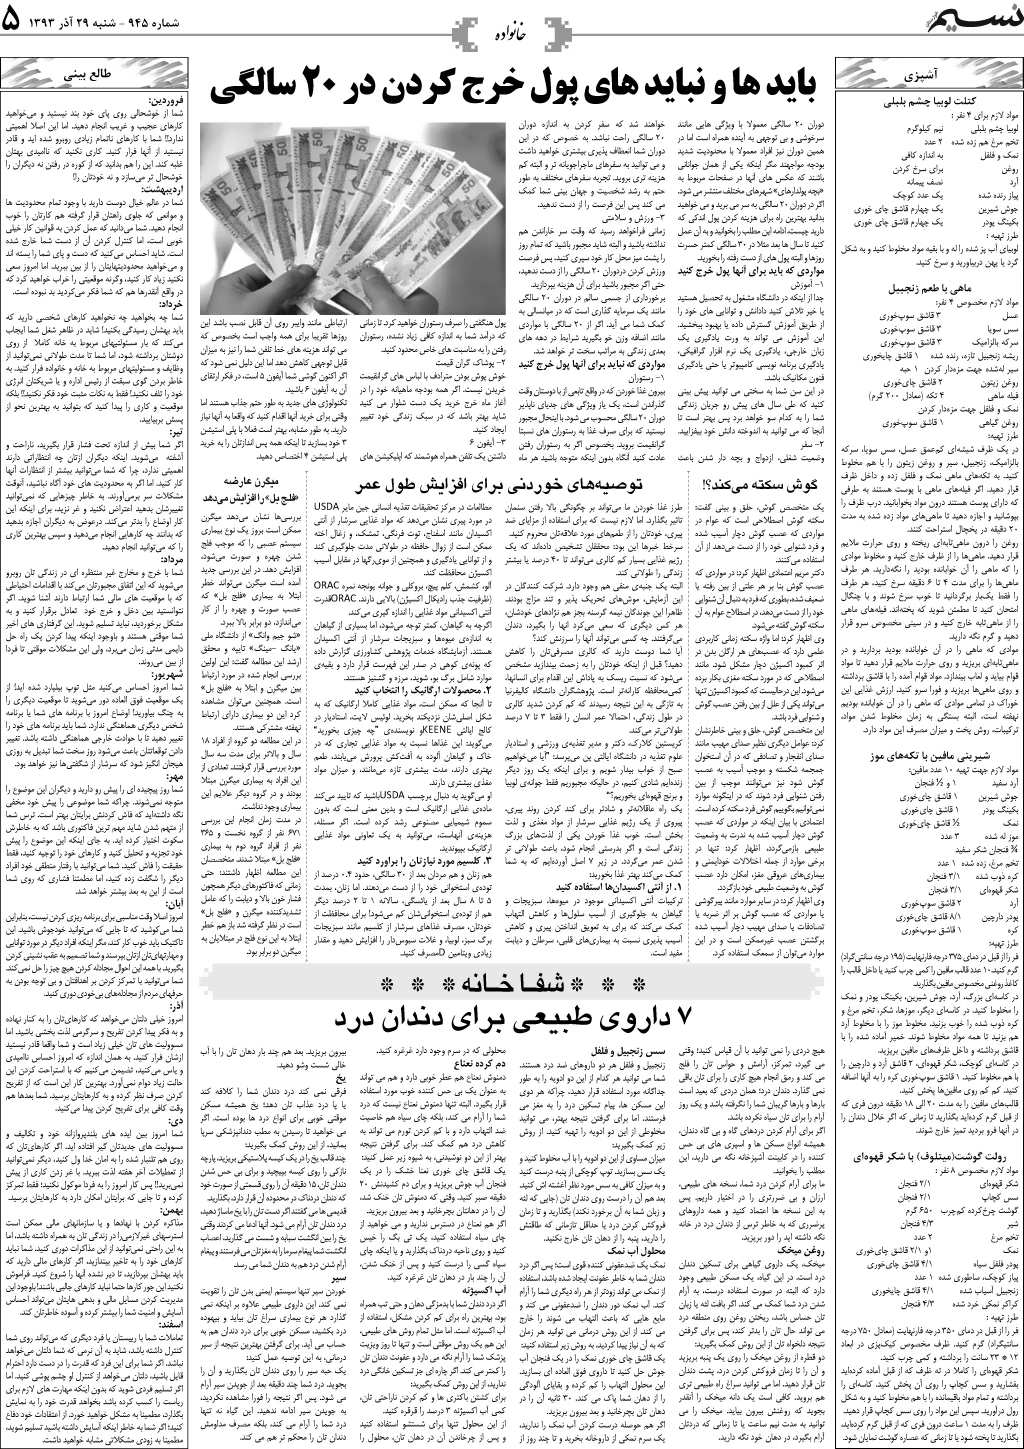 صفحه خانواده روزنامه نسیم شماره 945